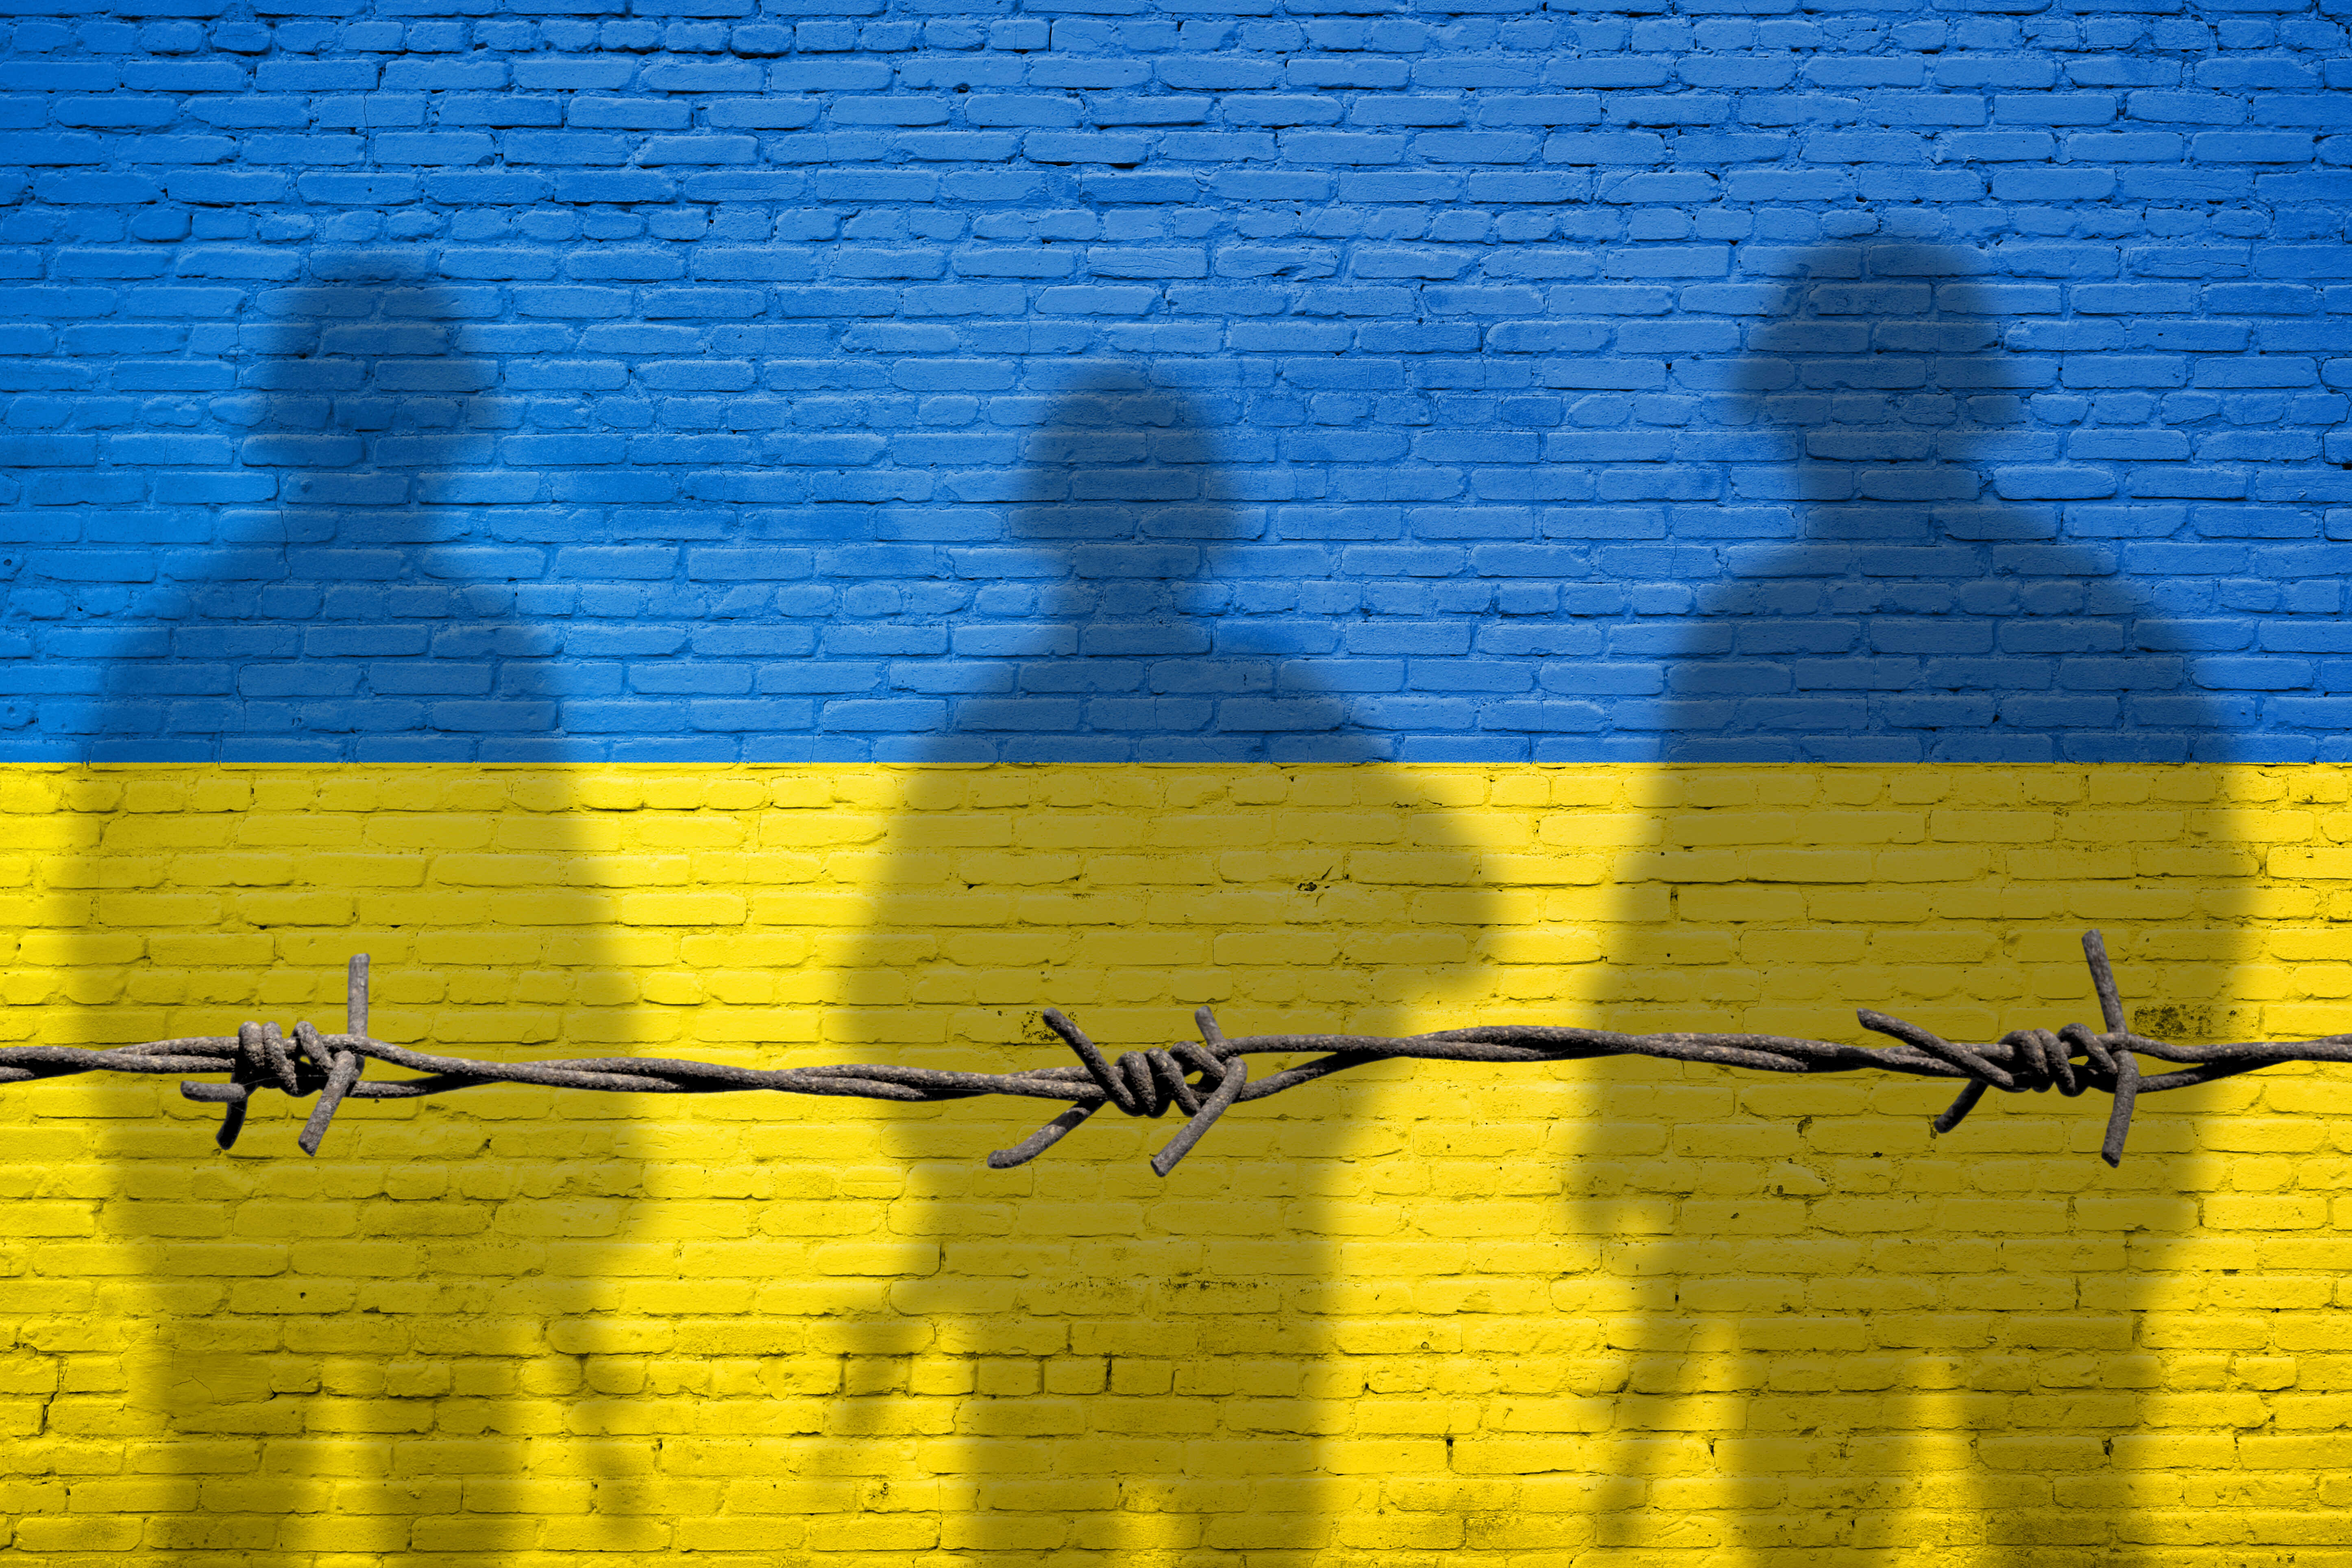 Ukrainekrise